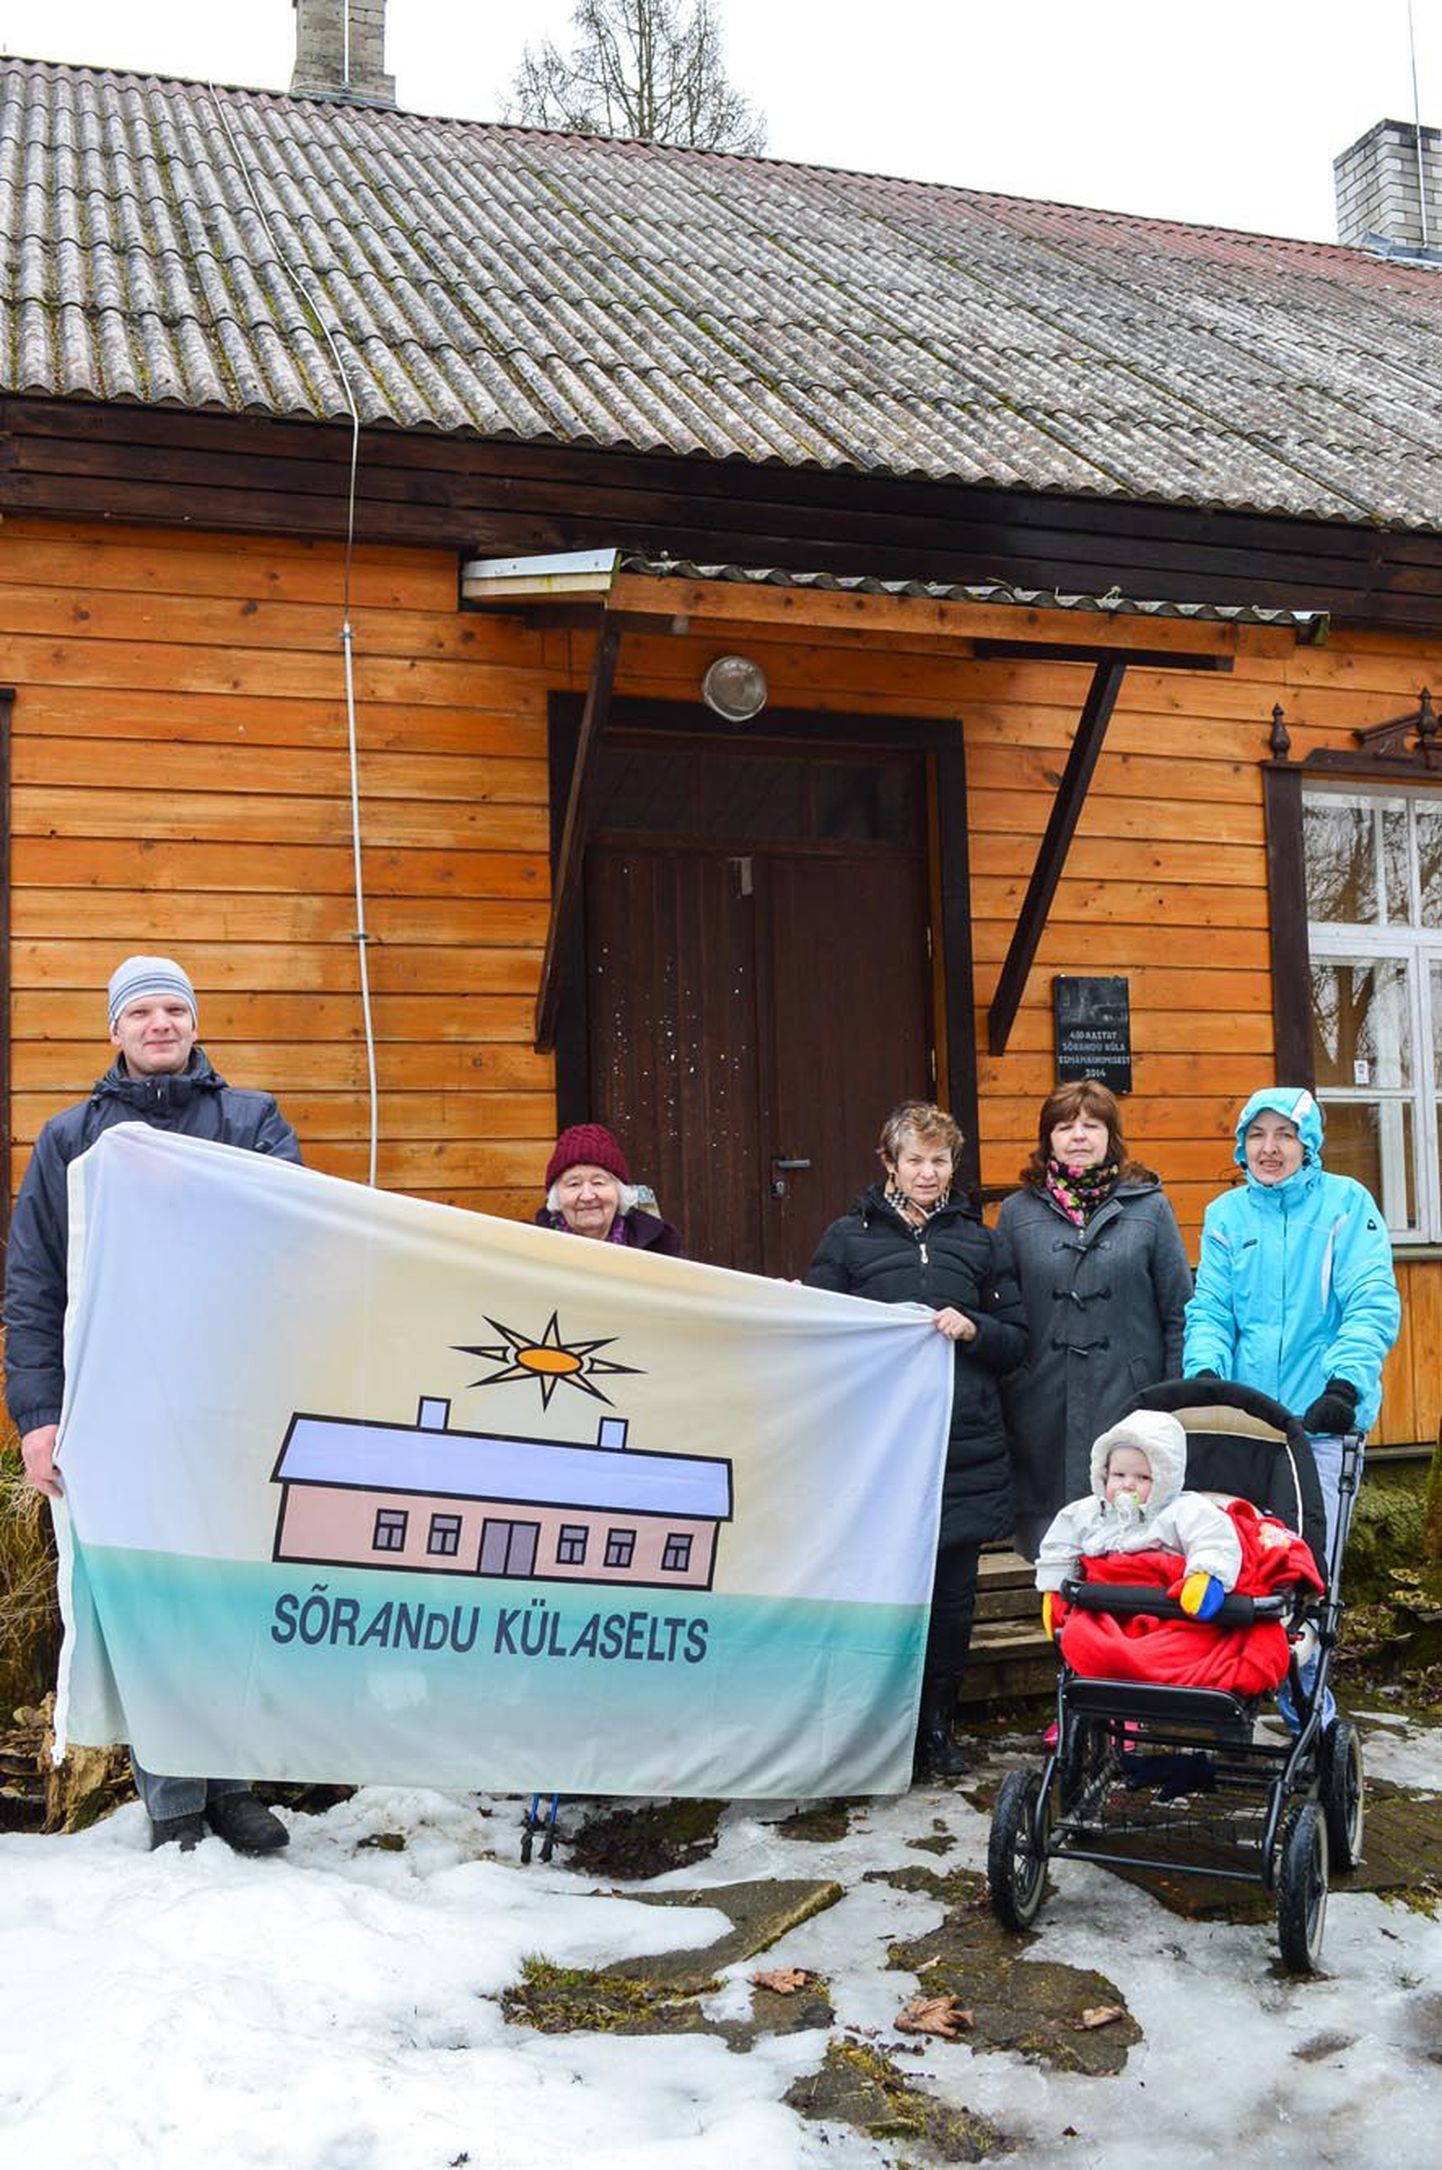 Sõrandu küla ainsat sümbolit, lippu, näitavad külaseltsi aktiivsed liikmed Rando Tadr (vasakult), Milvi Randmäe, Kaie Altmets, Ene Pedak ja Mariliis Tadr.